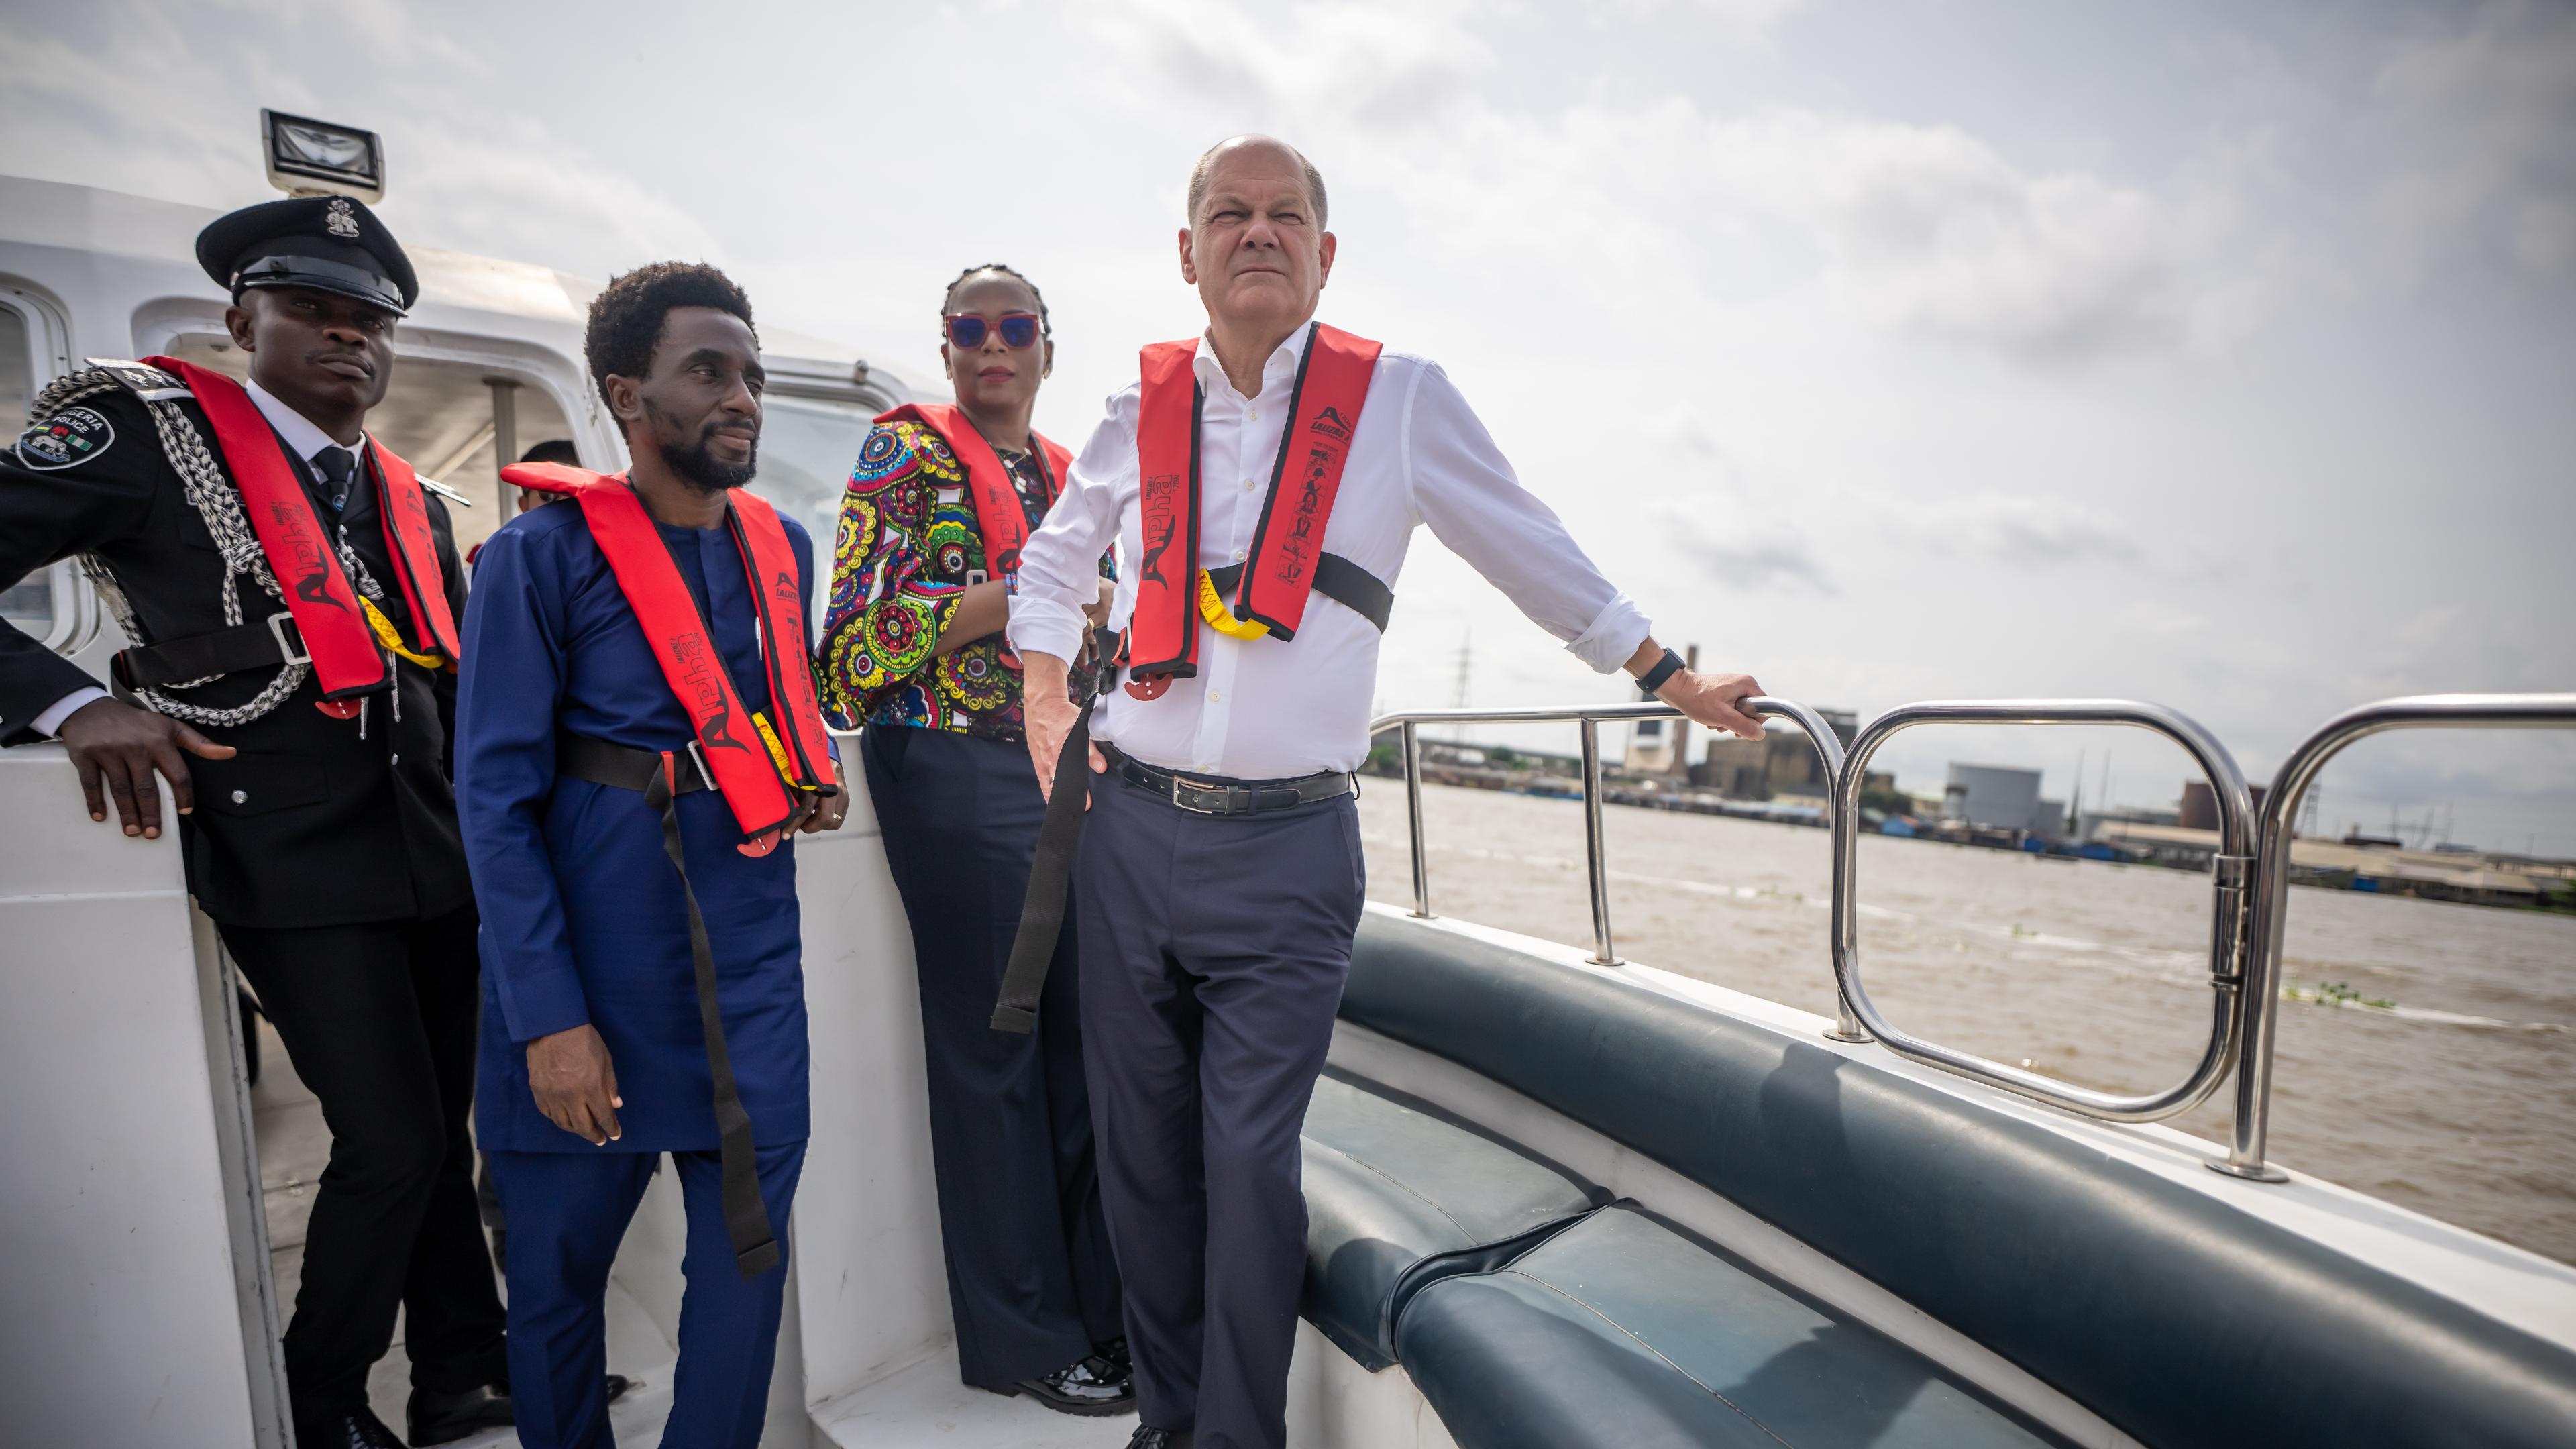 Bundeskanzler Scholz steht neben nigerianischen Vertretern bei einer Bootsfahrt in Lagos.